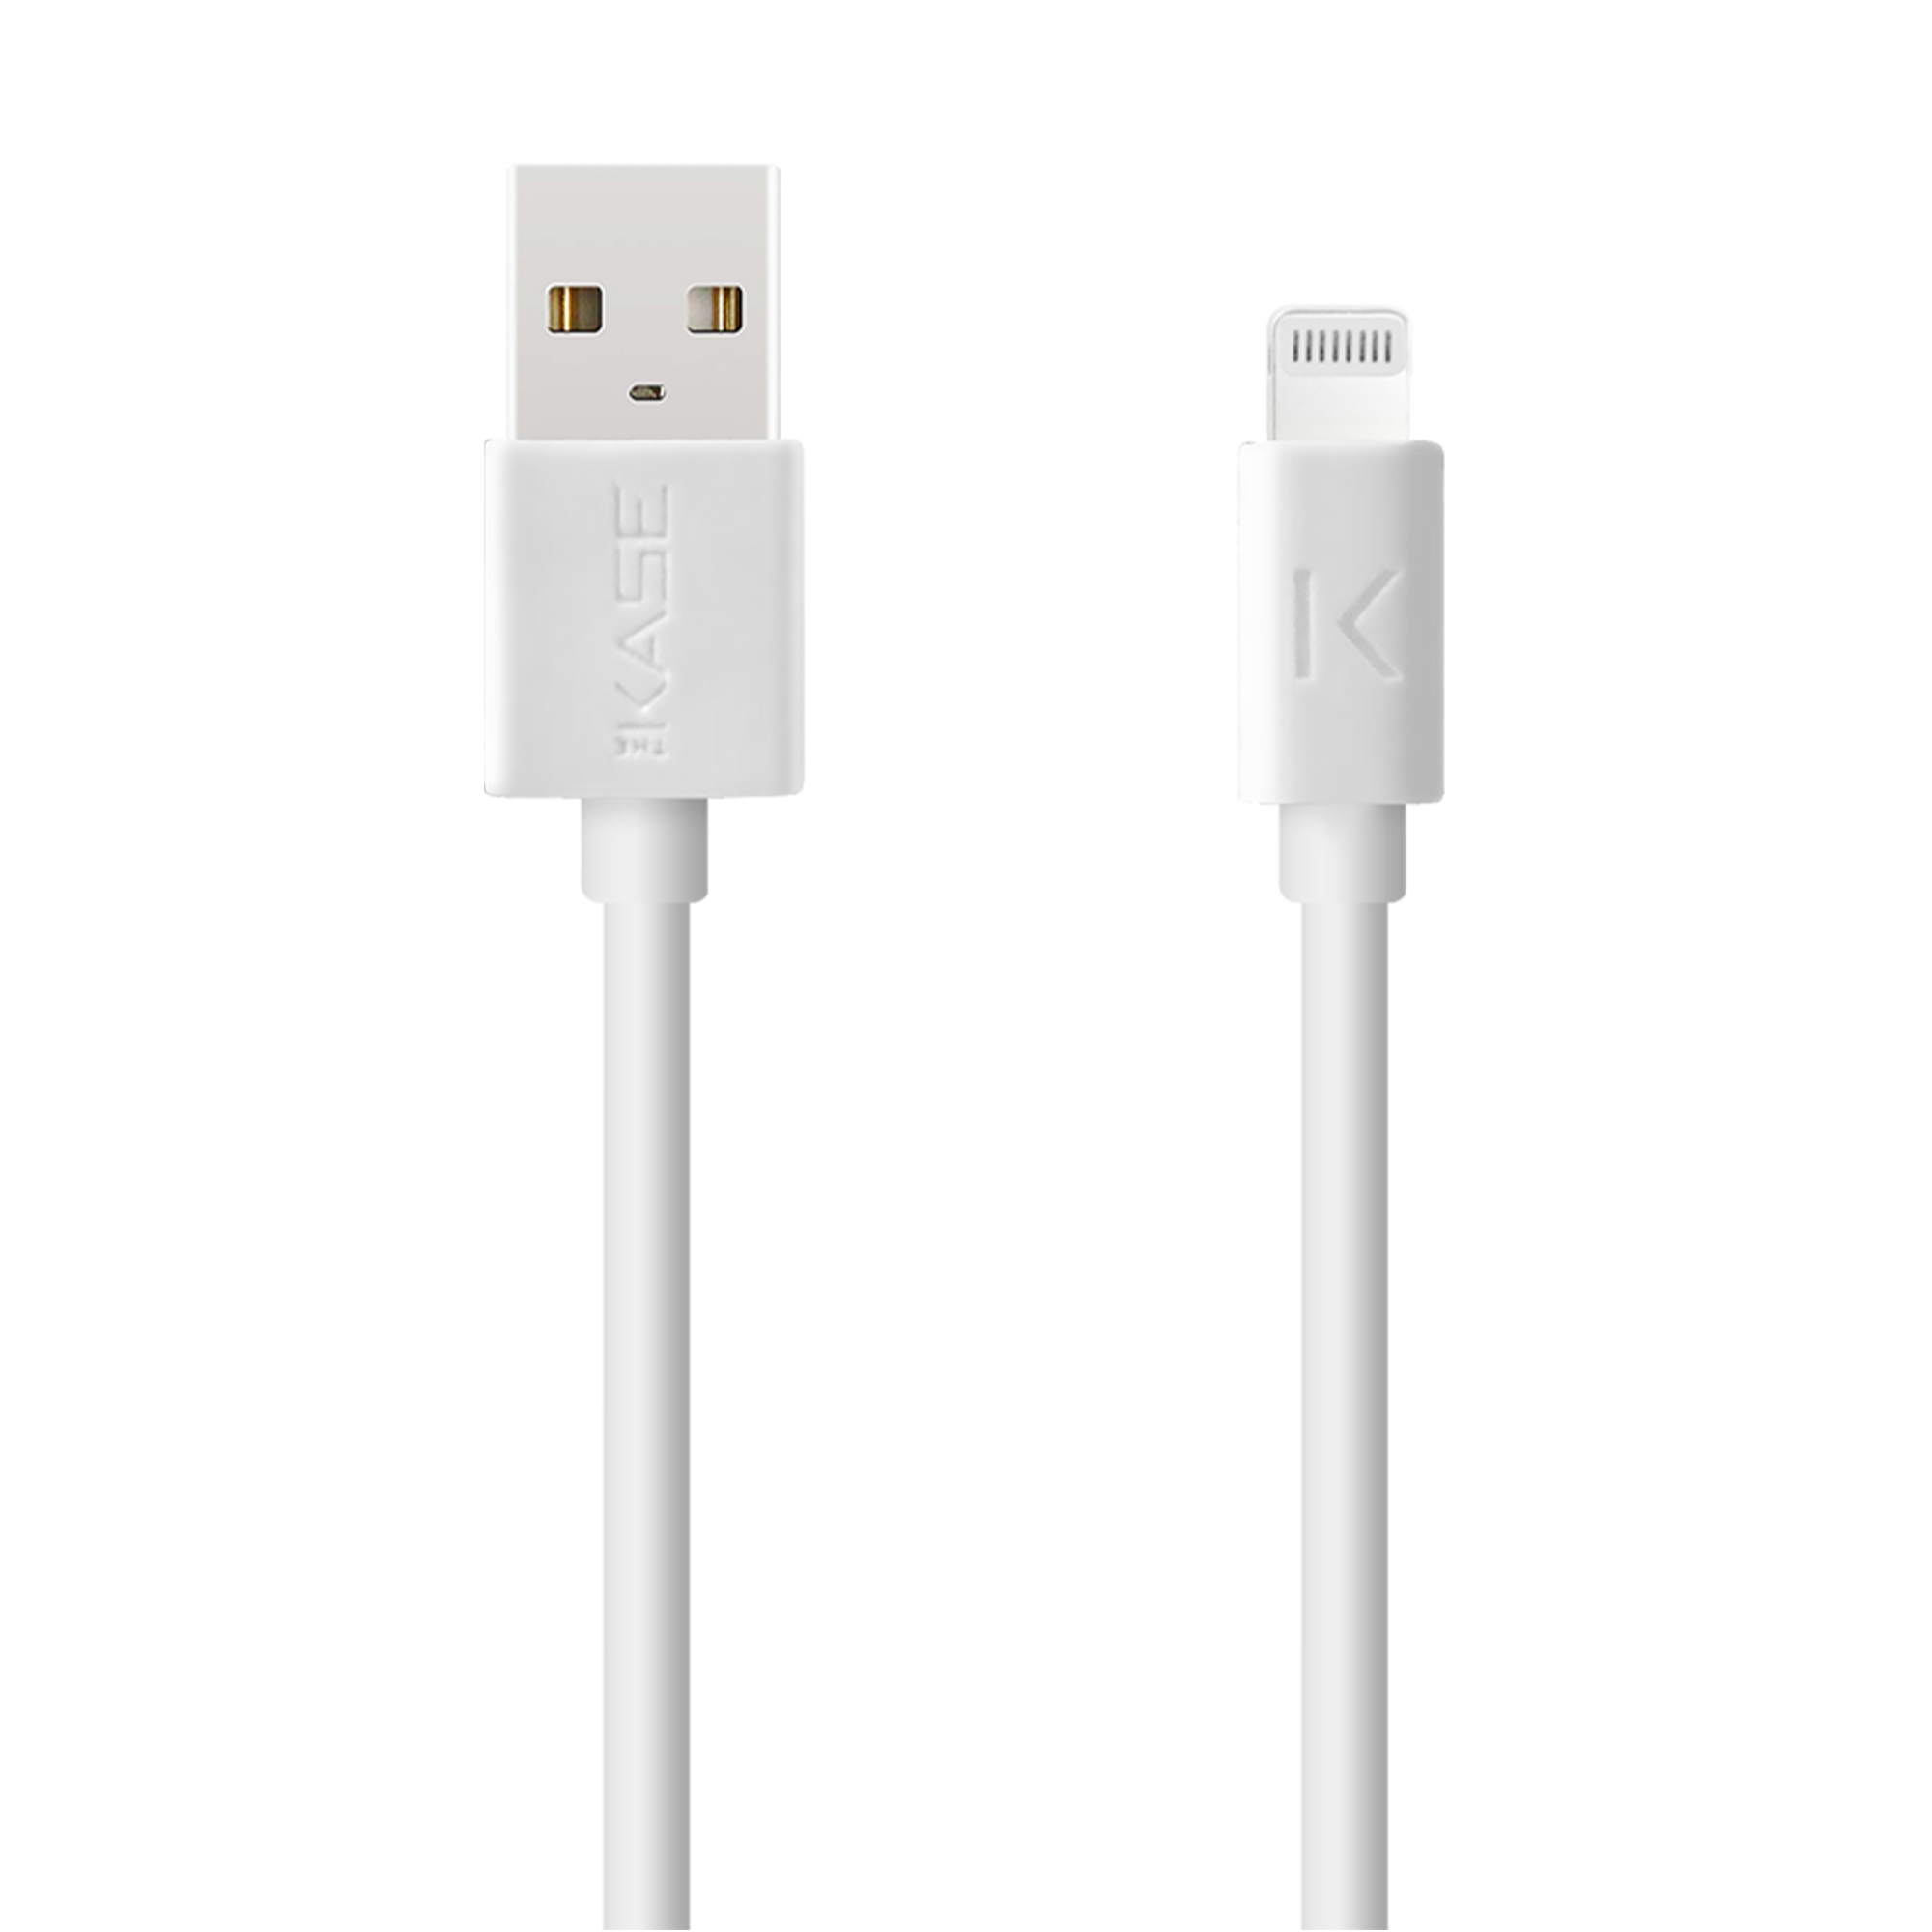 Câble USB 3.1 Gen 2 charge rapide USB-C vers USB-A métallisé tressé Charge/sync  (2M), Noir